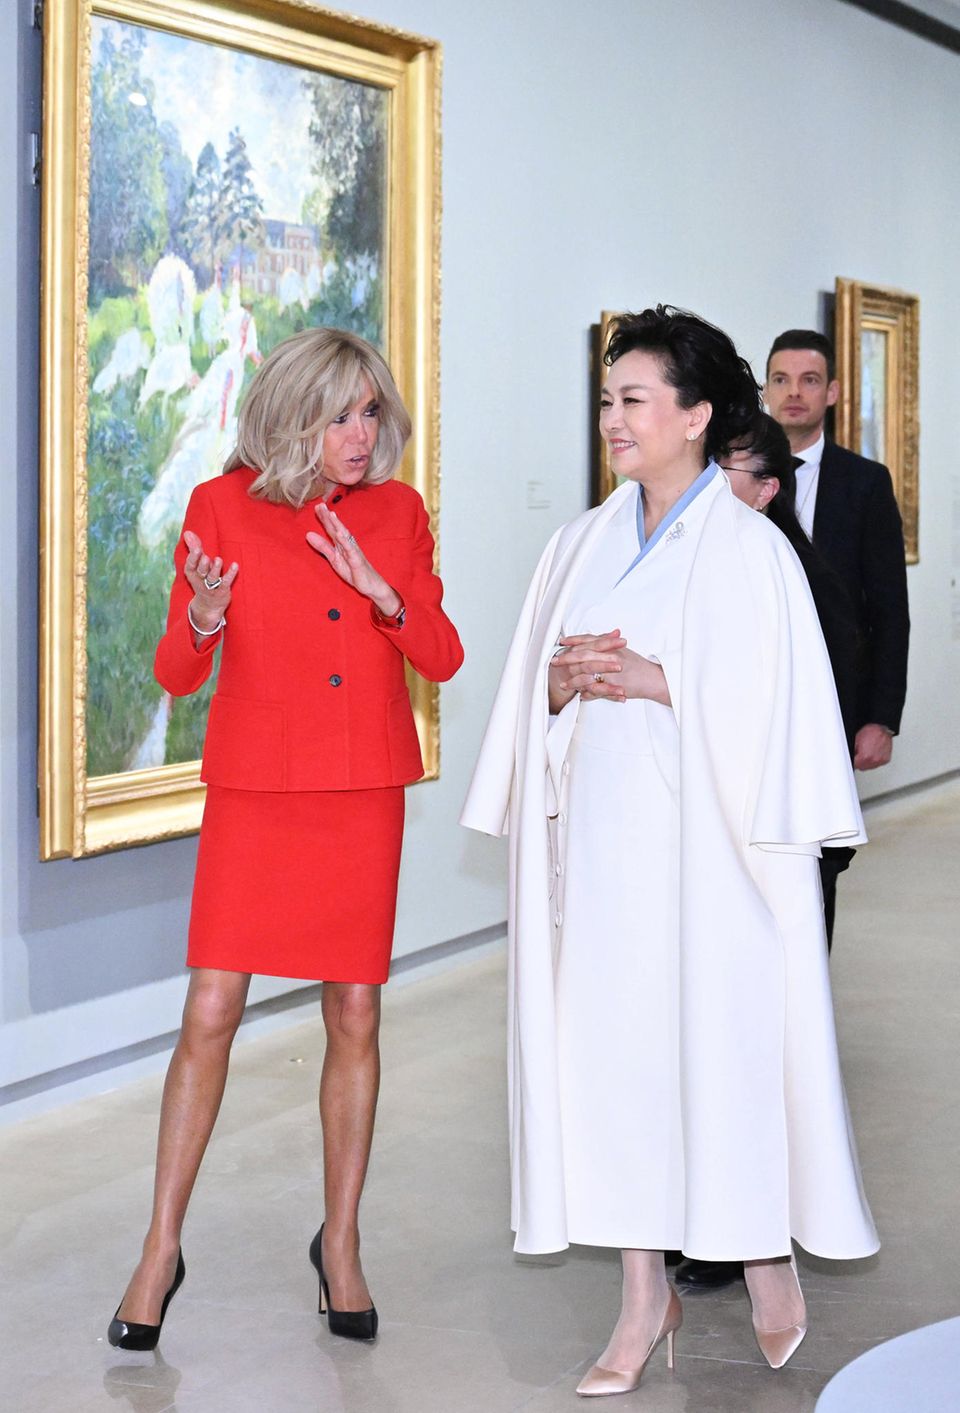 Nach dem ersten Empfang des Staatsbesuchs aus China geht es für die beiden First Ladys gleich auf einen kulturellen Ausflug ins Musée D'Orsay. Während Brigitte Macron in einem roten Dior-Ensemble leuchtet, zeigt sich Peng Liyuan in einem traditionellem Outfit in Weiß mit eleganten Mantel darüber